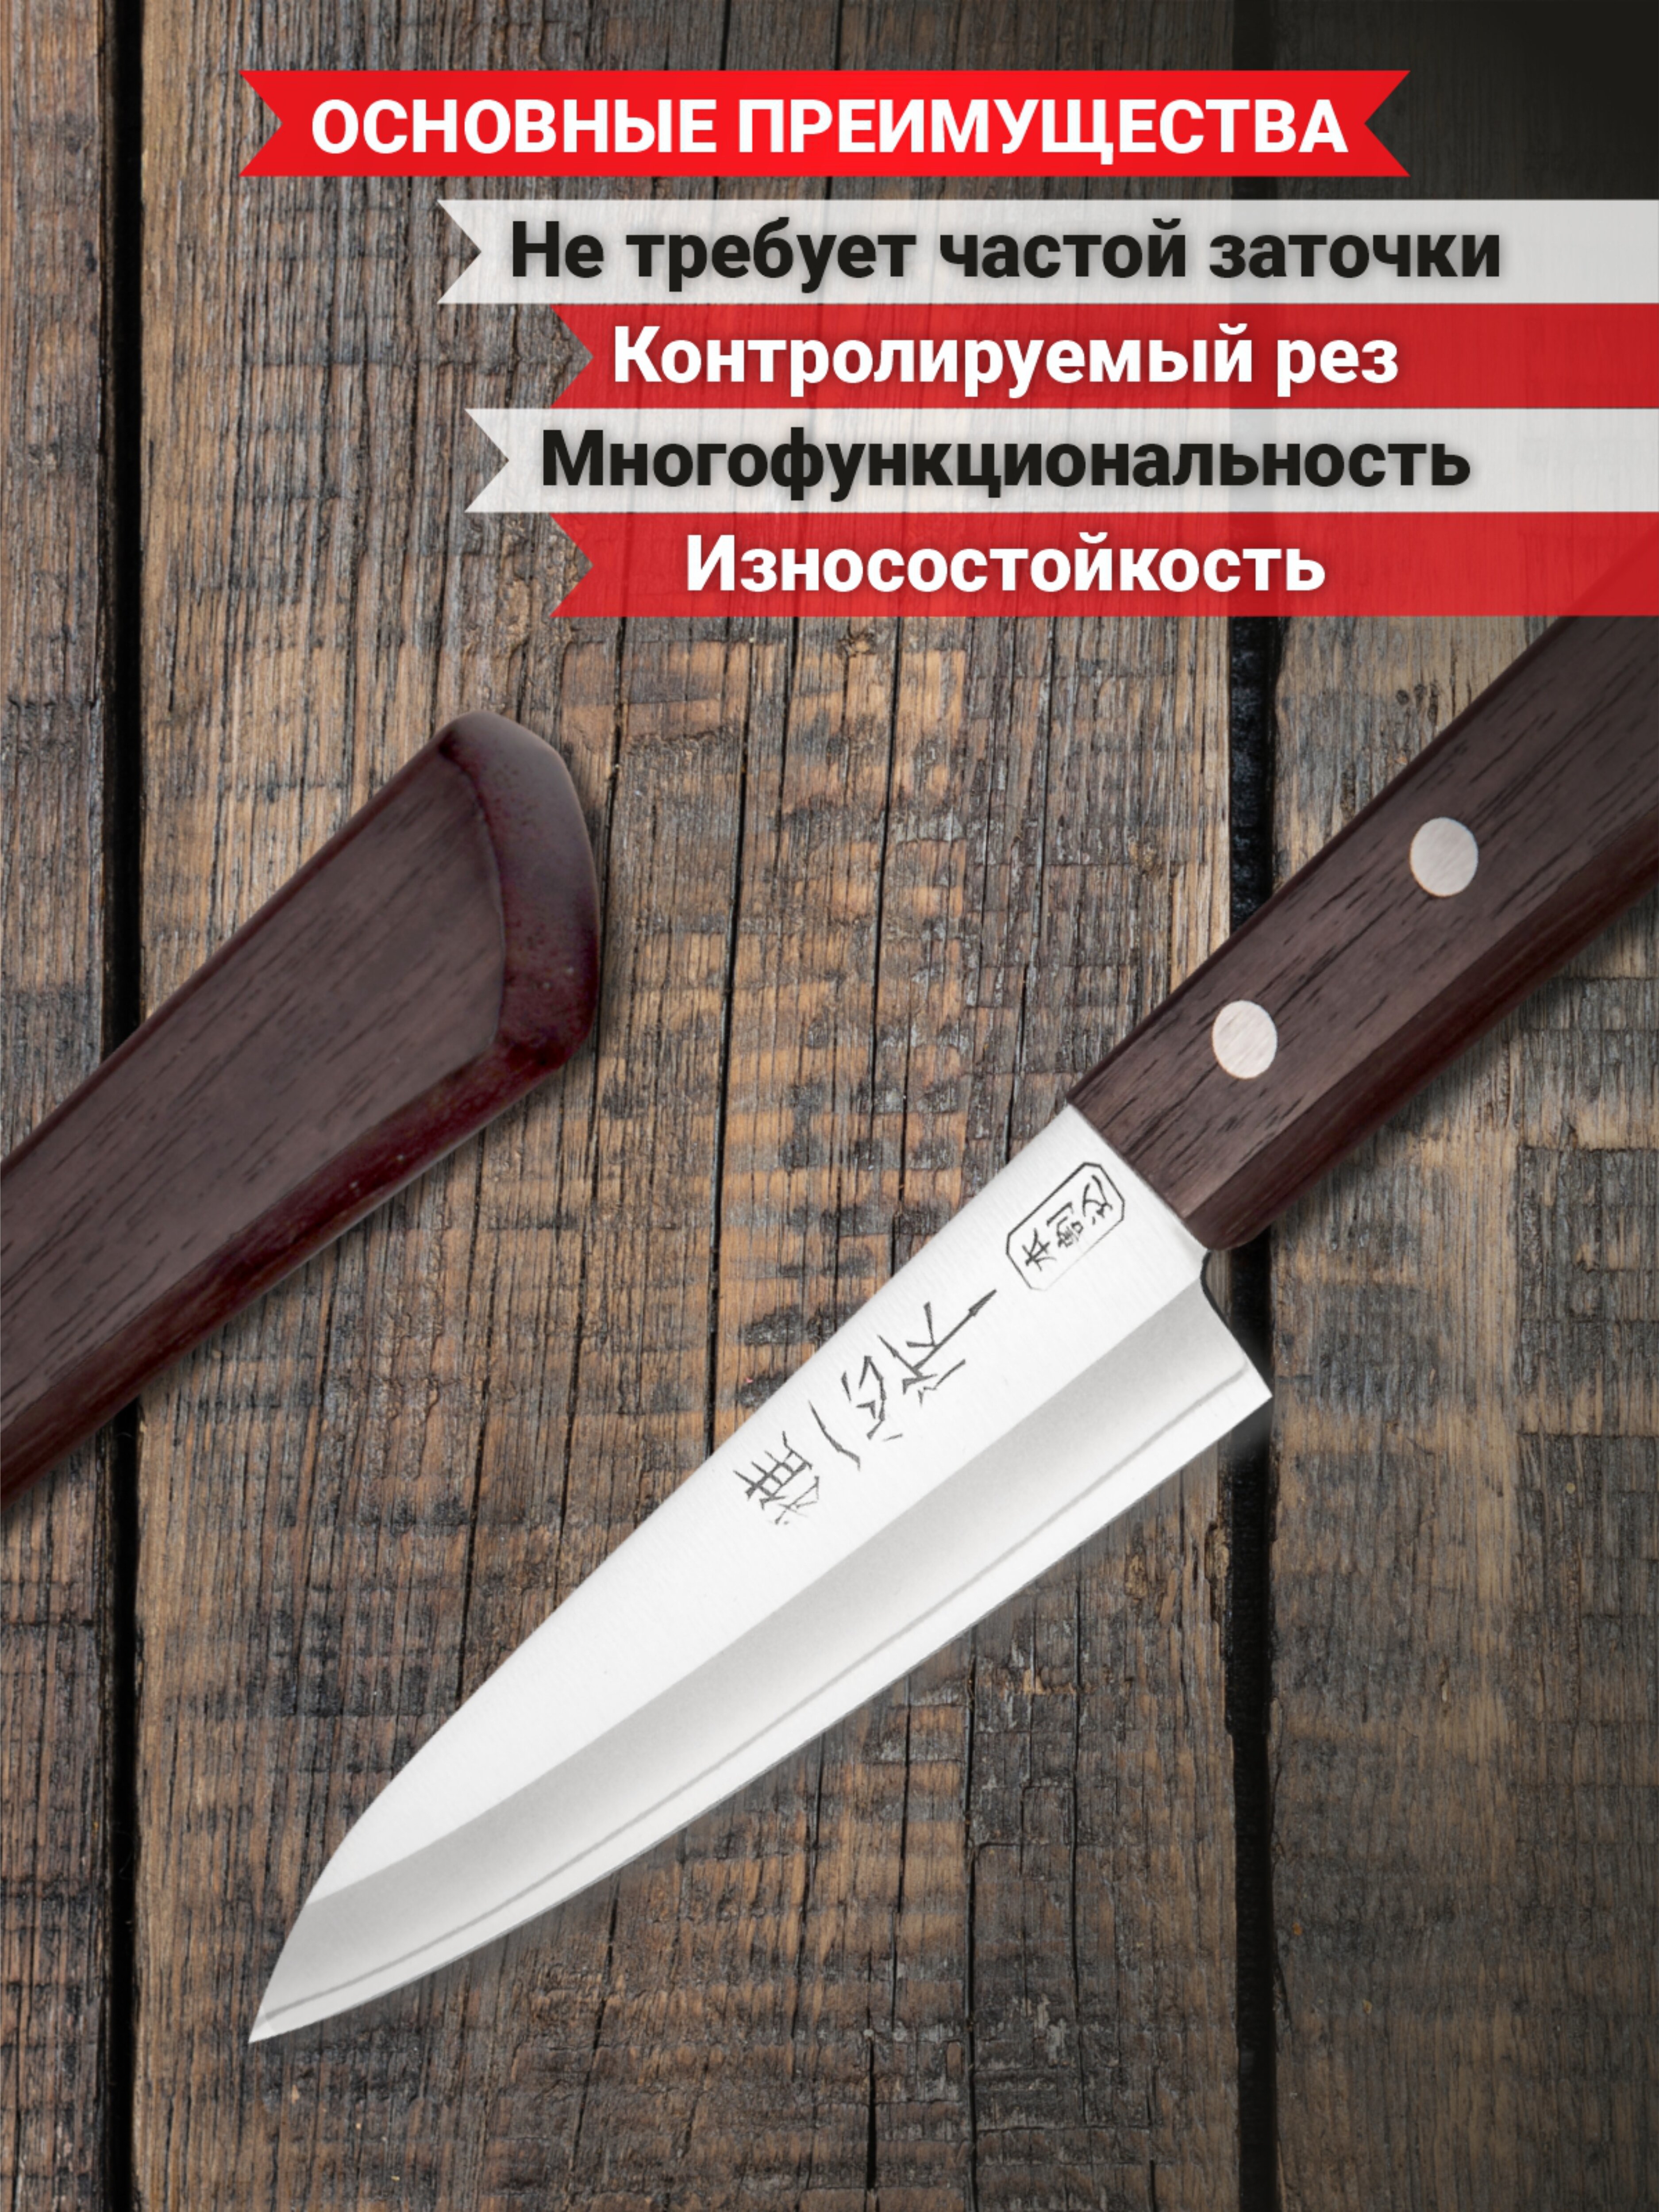 Нож универсальный Kanetsugu Special Offer, 120 мм, сталь AUS-8/SUS410, 3слоя, рукоять розовое дерево - фото №4